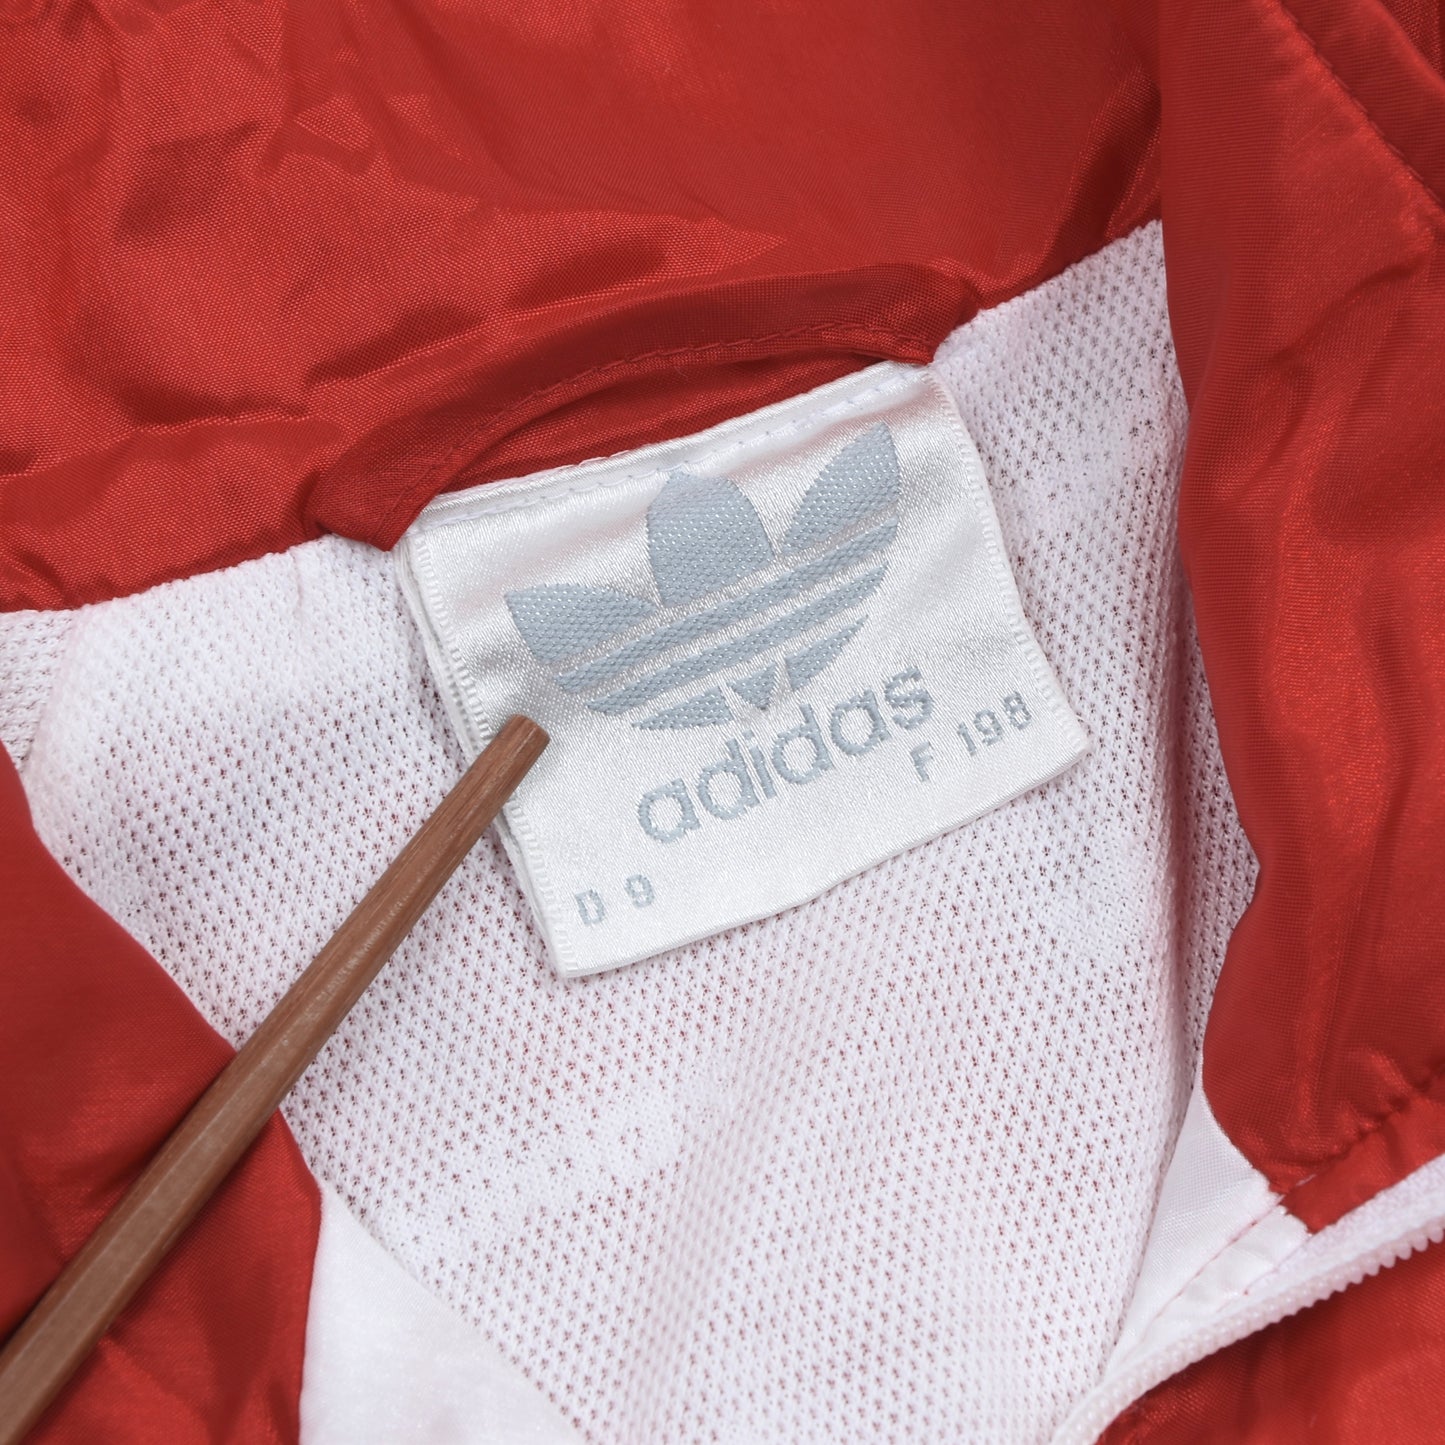 Vintage Adidas Austria Track Suit Size D9 - Red & White